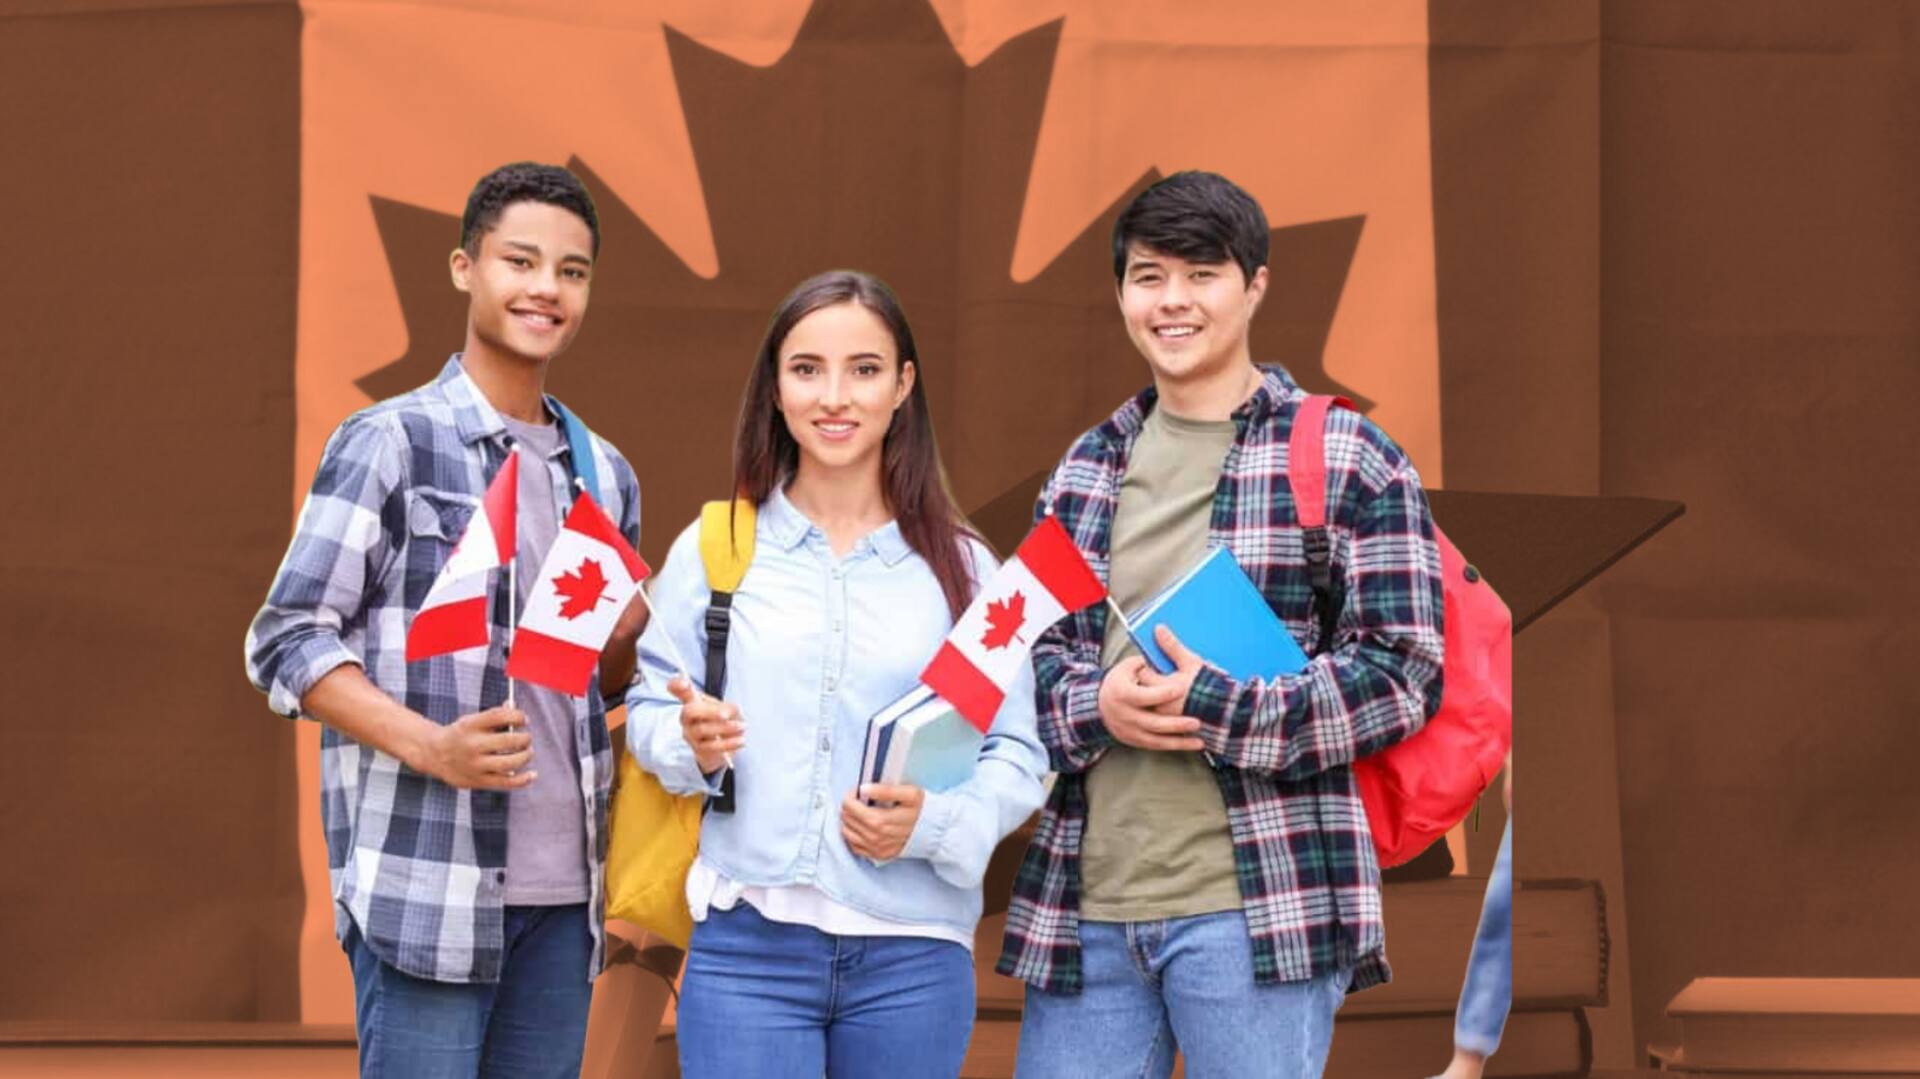 कनाडा: अंतरराष्ट्रीय छात्रों की संख्या पर अंकुश लगाएगी सरकार, भारतीय छात्रों पर भी होगा असर